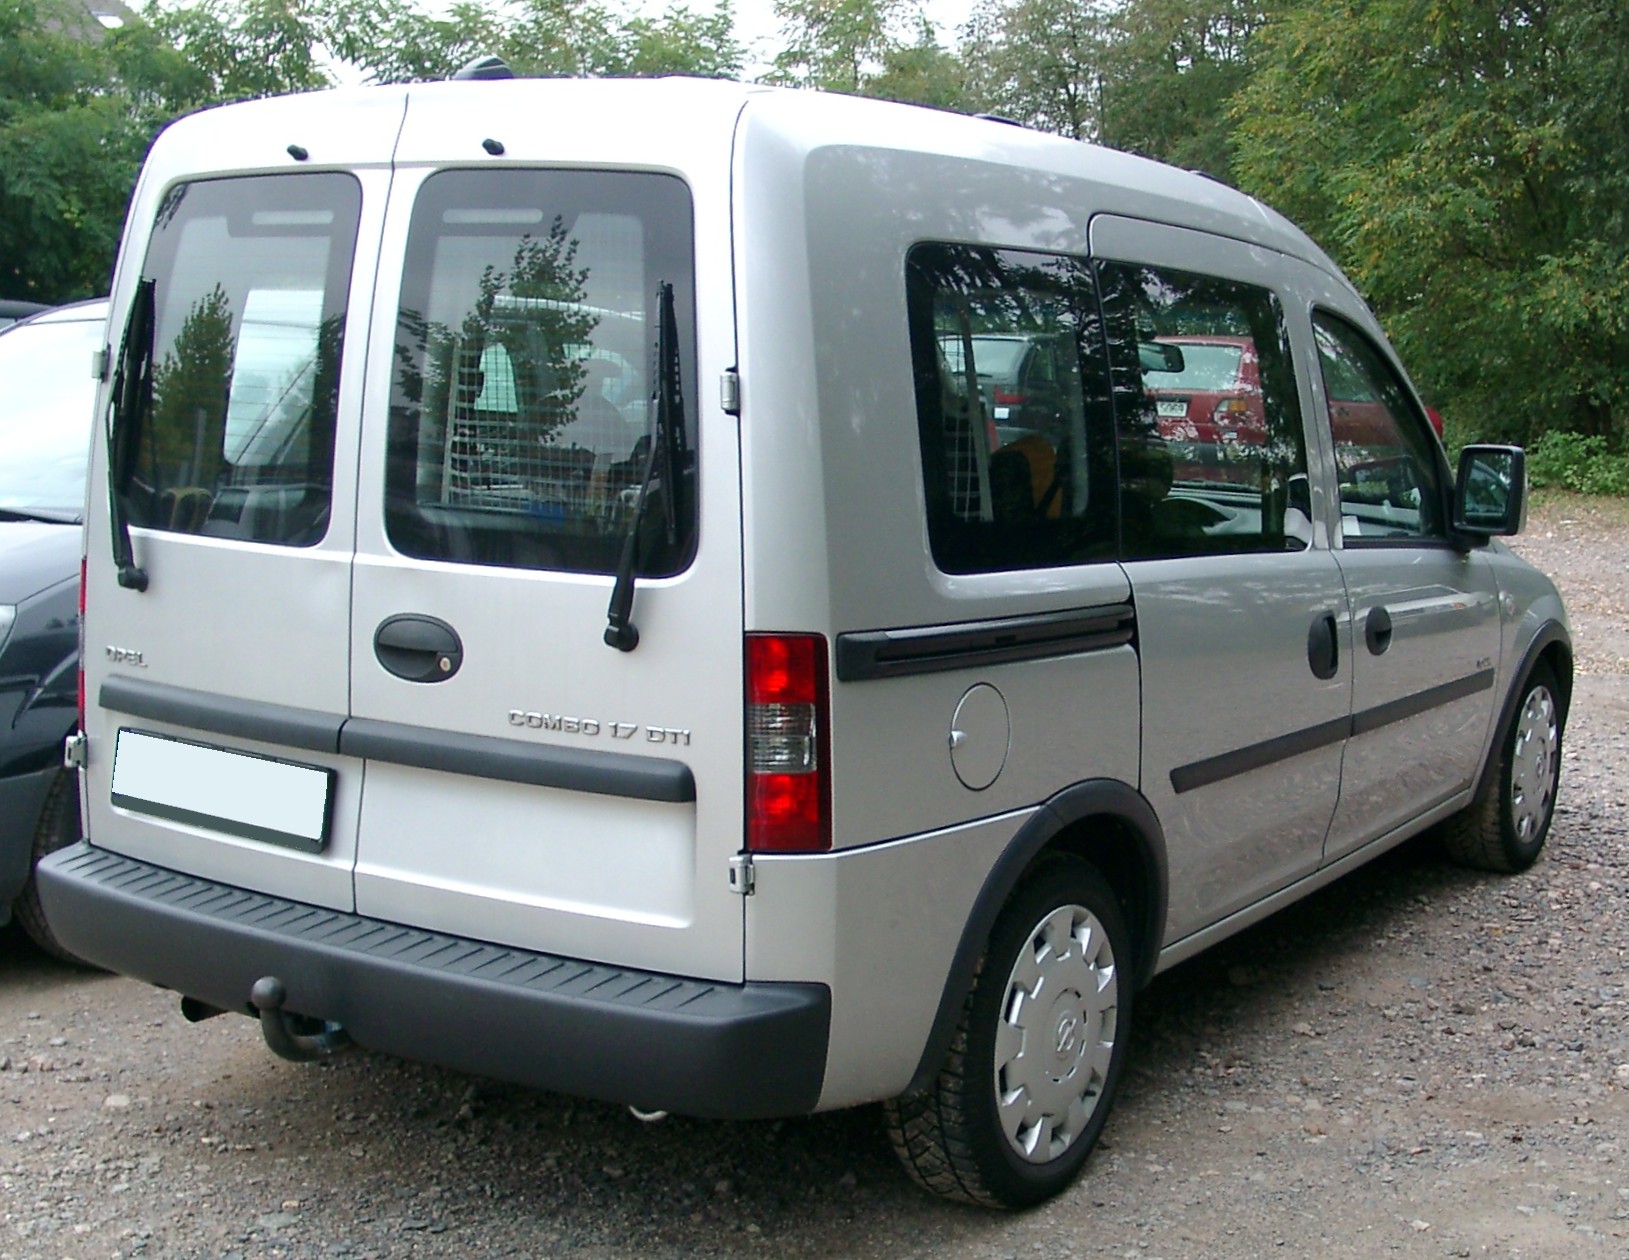 File:Opel Combo rear 20071002.jpg - Wikimedia Commons